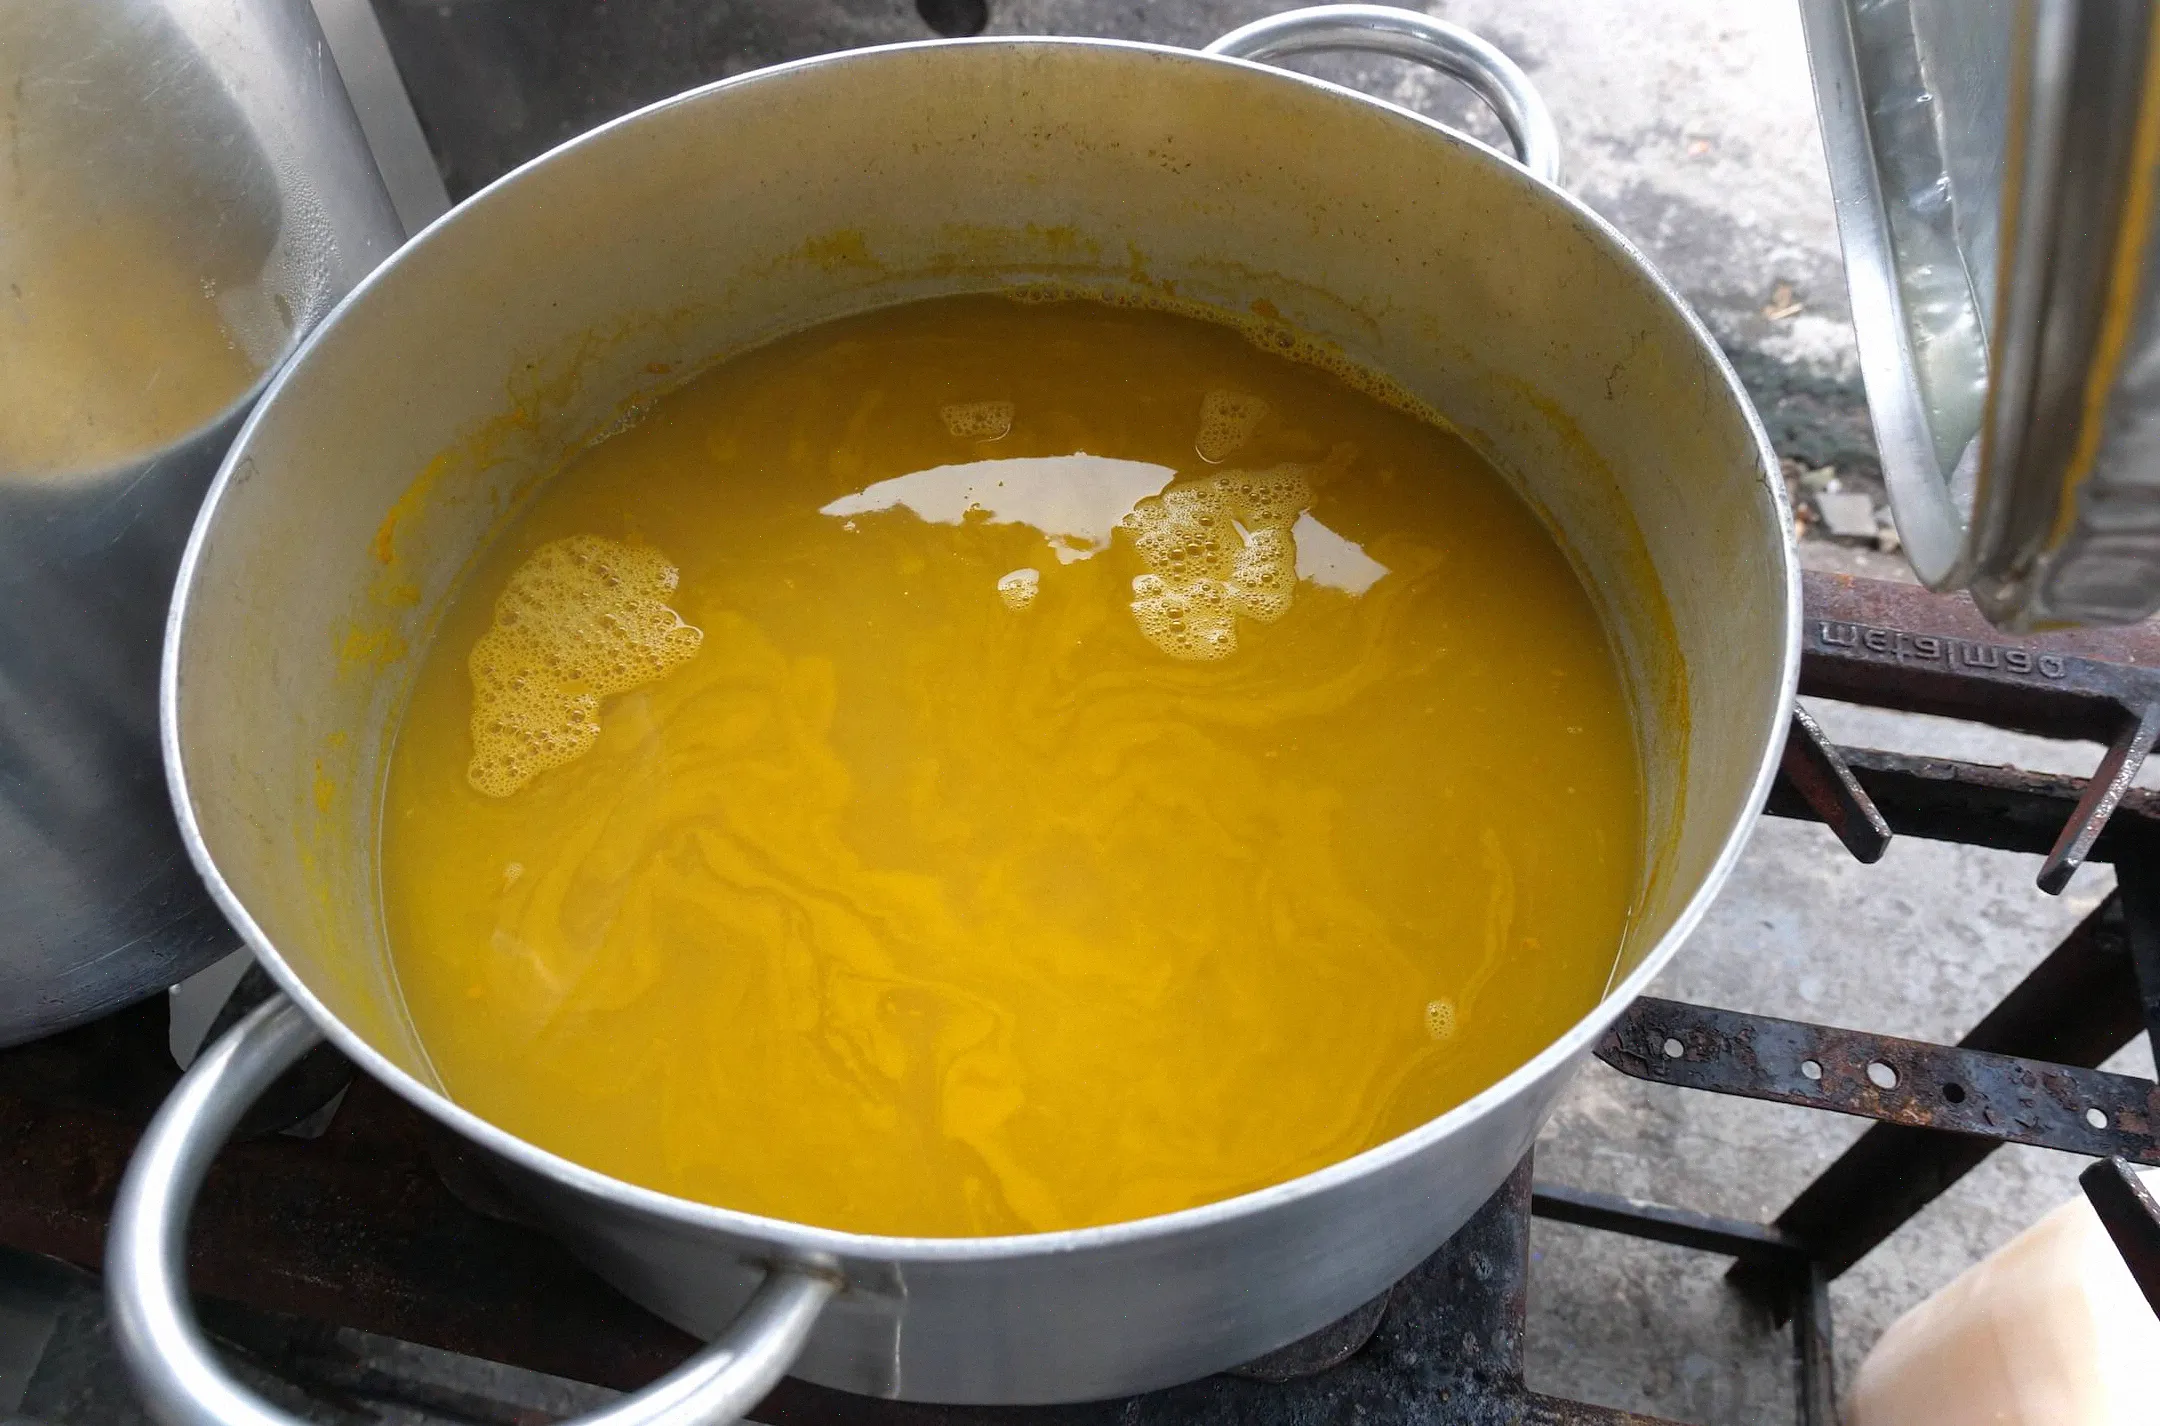 En el norte de Brasil, muchos platos se preparan con los subproductos de la fermentación de la yuca, incluido el tucupi